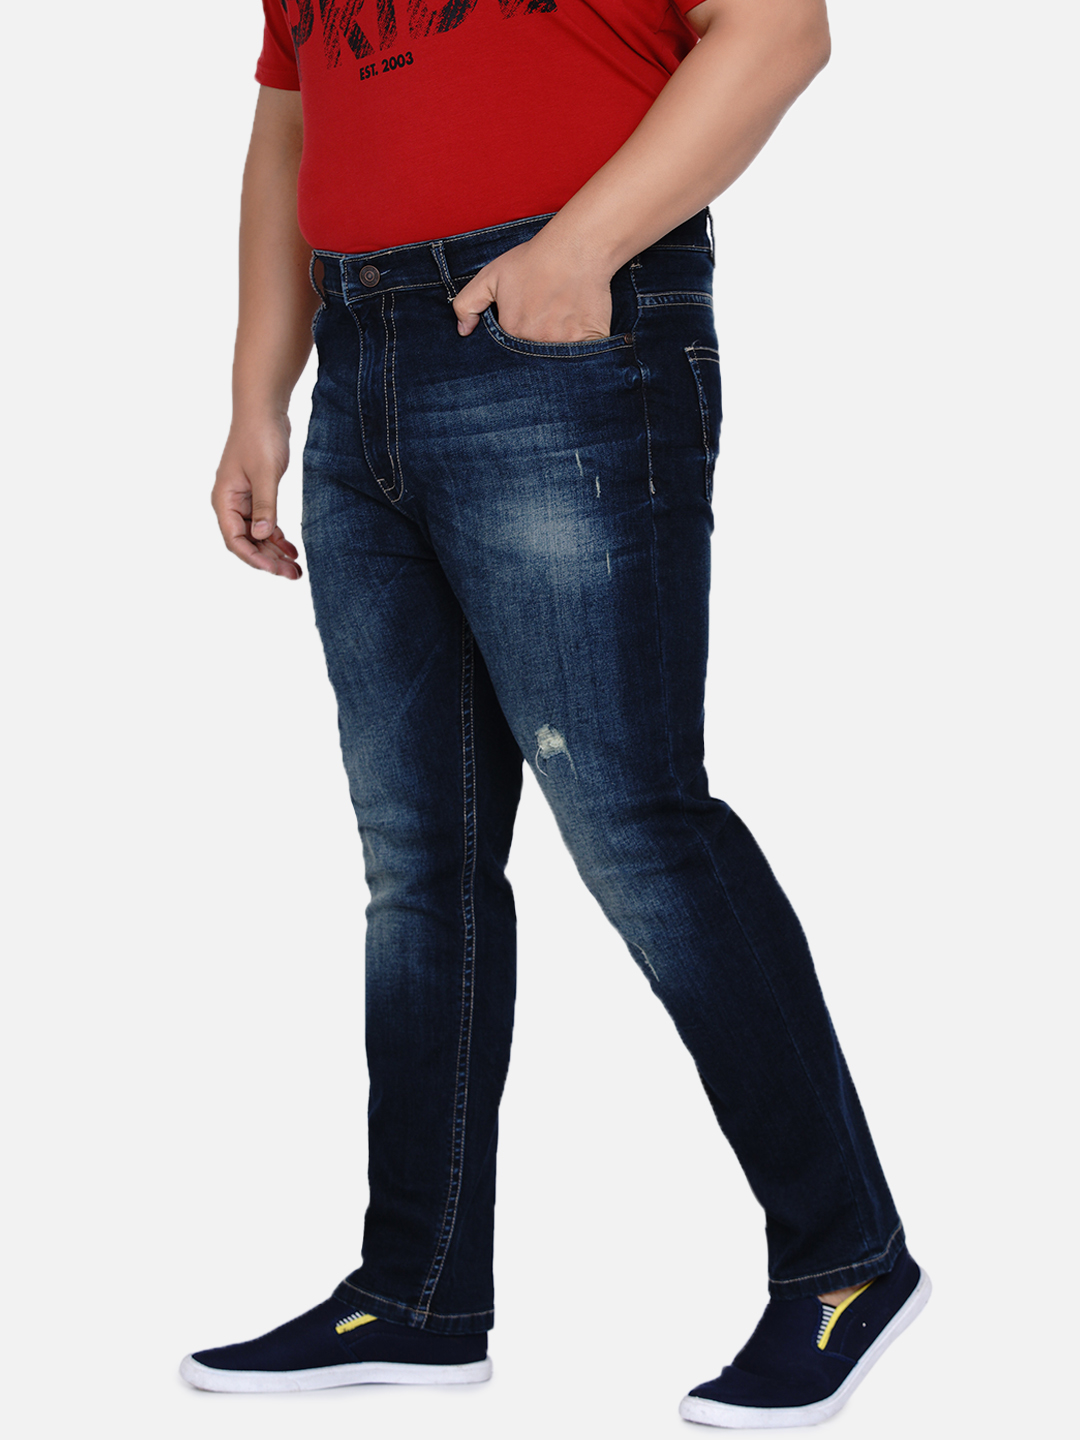 bottomwear/jeans/JPJ12184/jpj12184-5.jpg